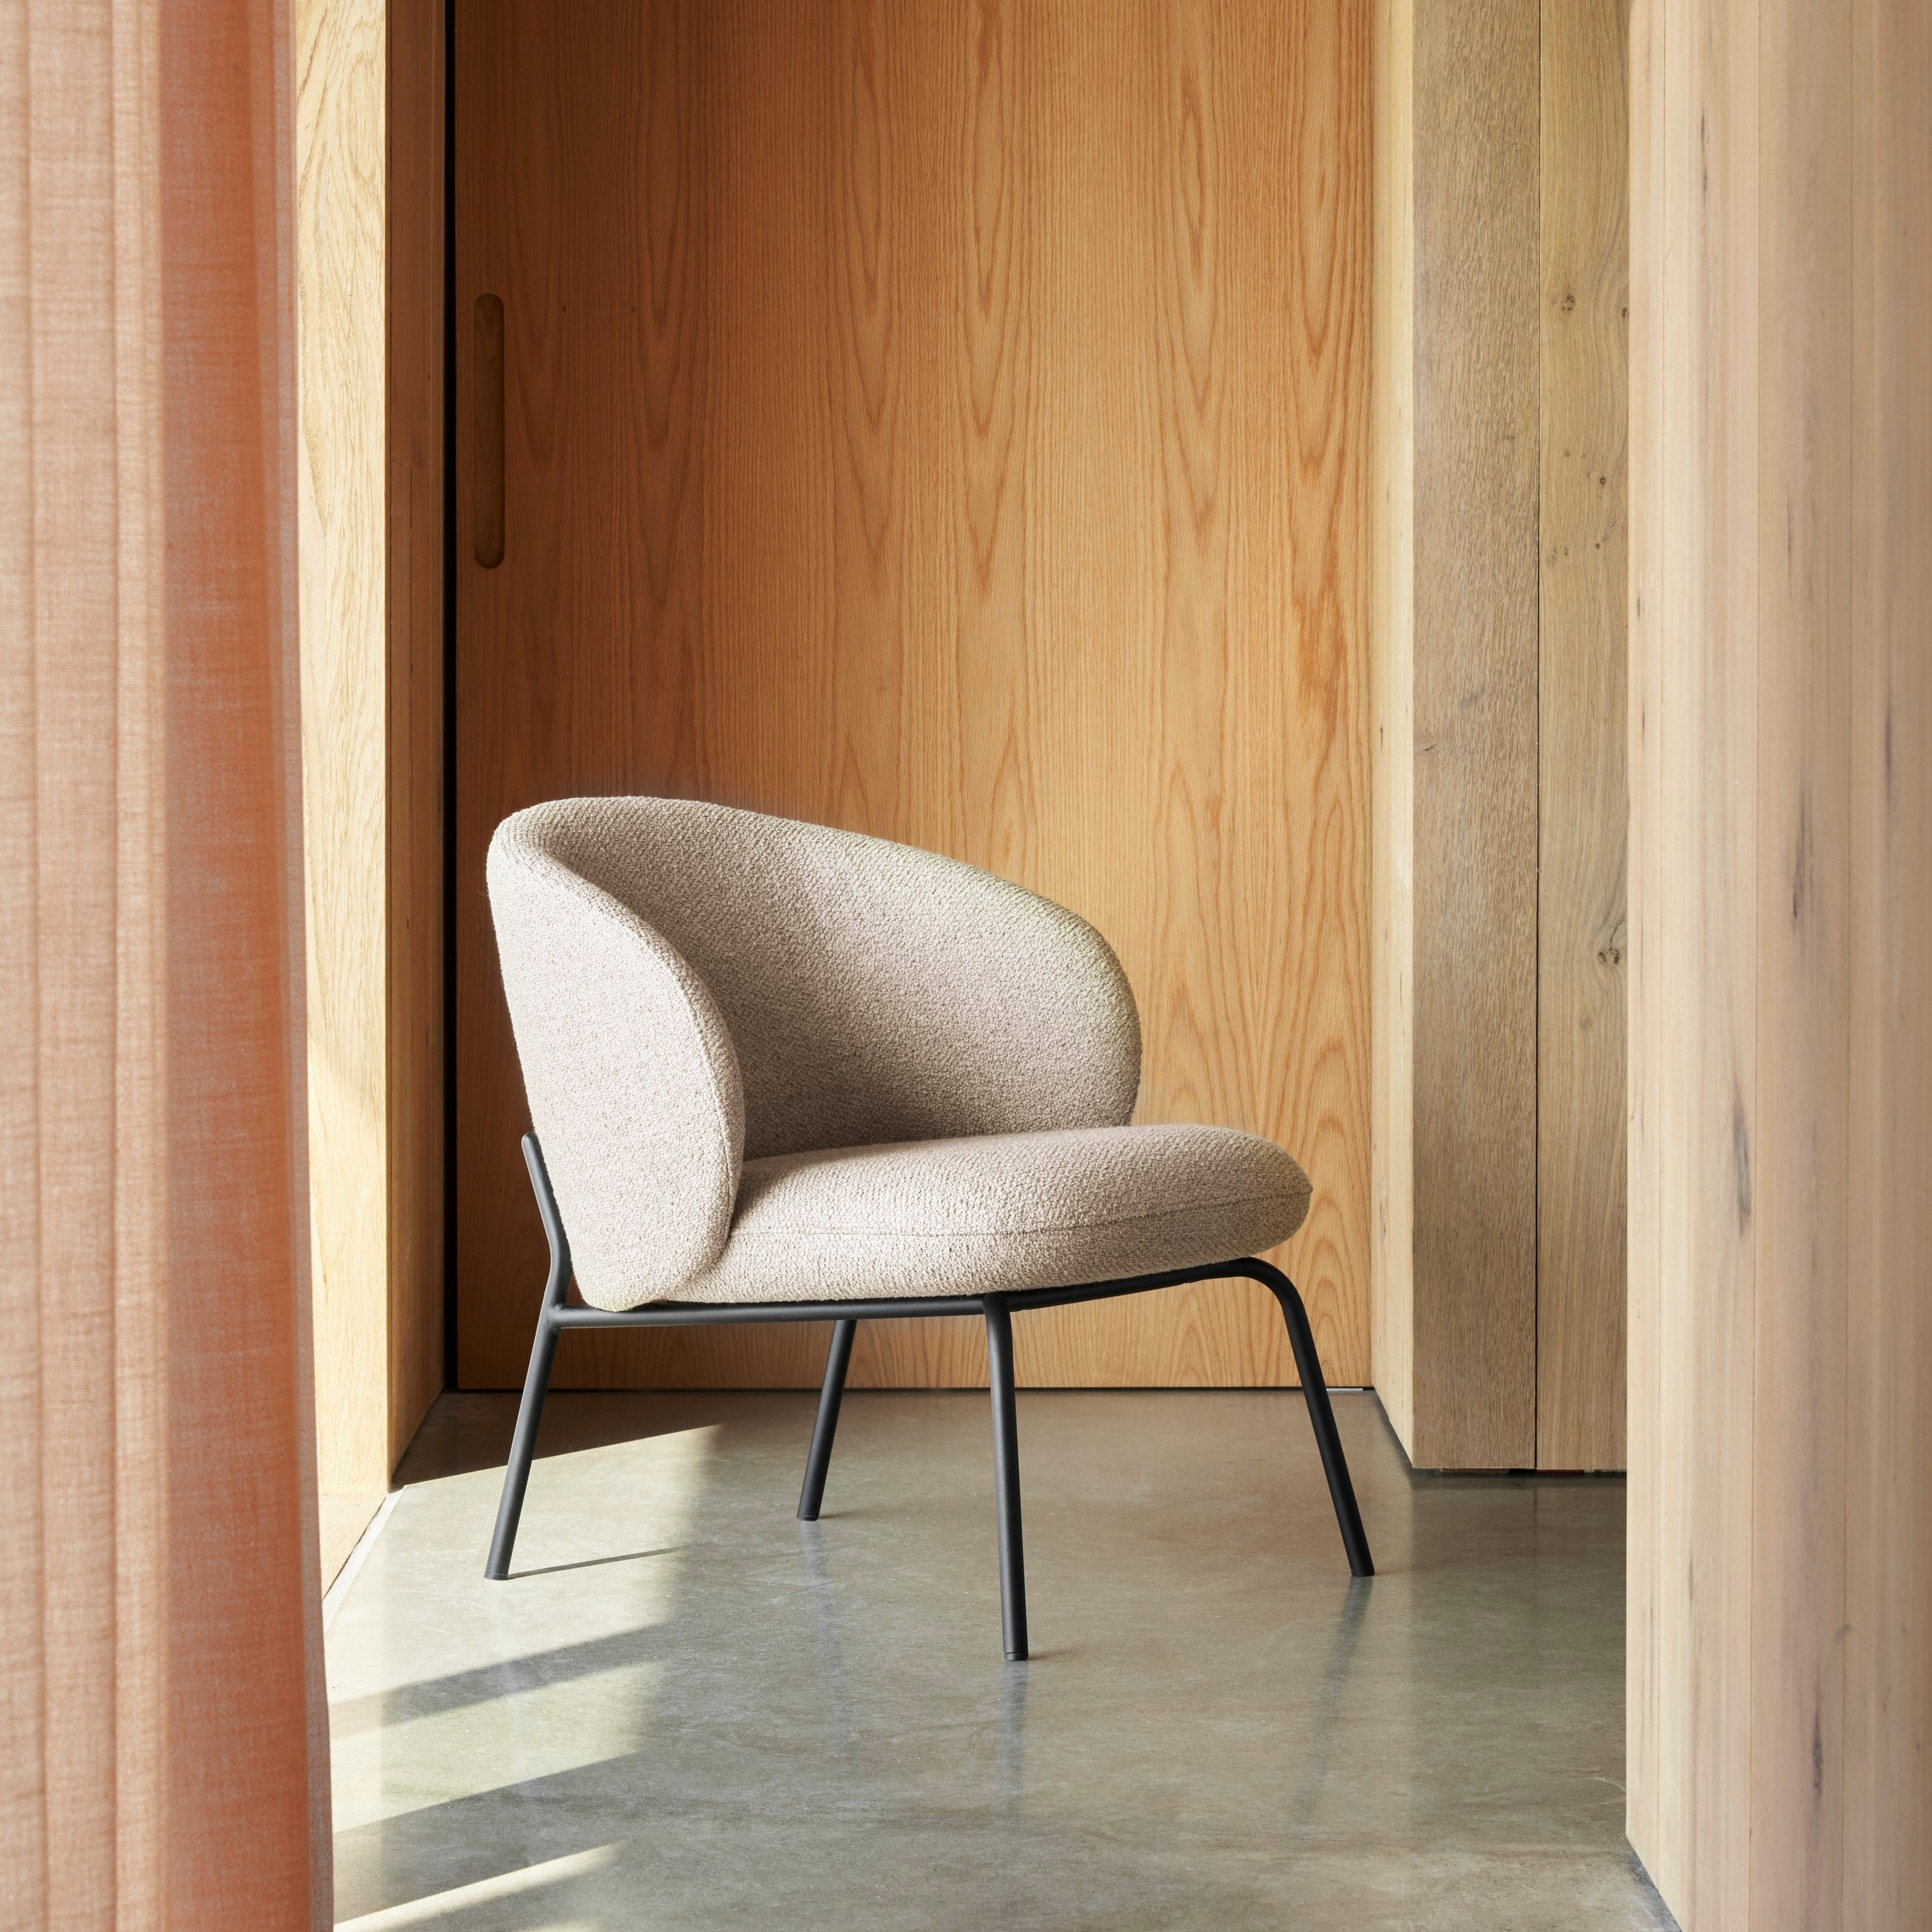 Moderne stol med polster i beige samt sort ramme opstillet i solbelyst indretning med træ.